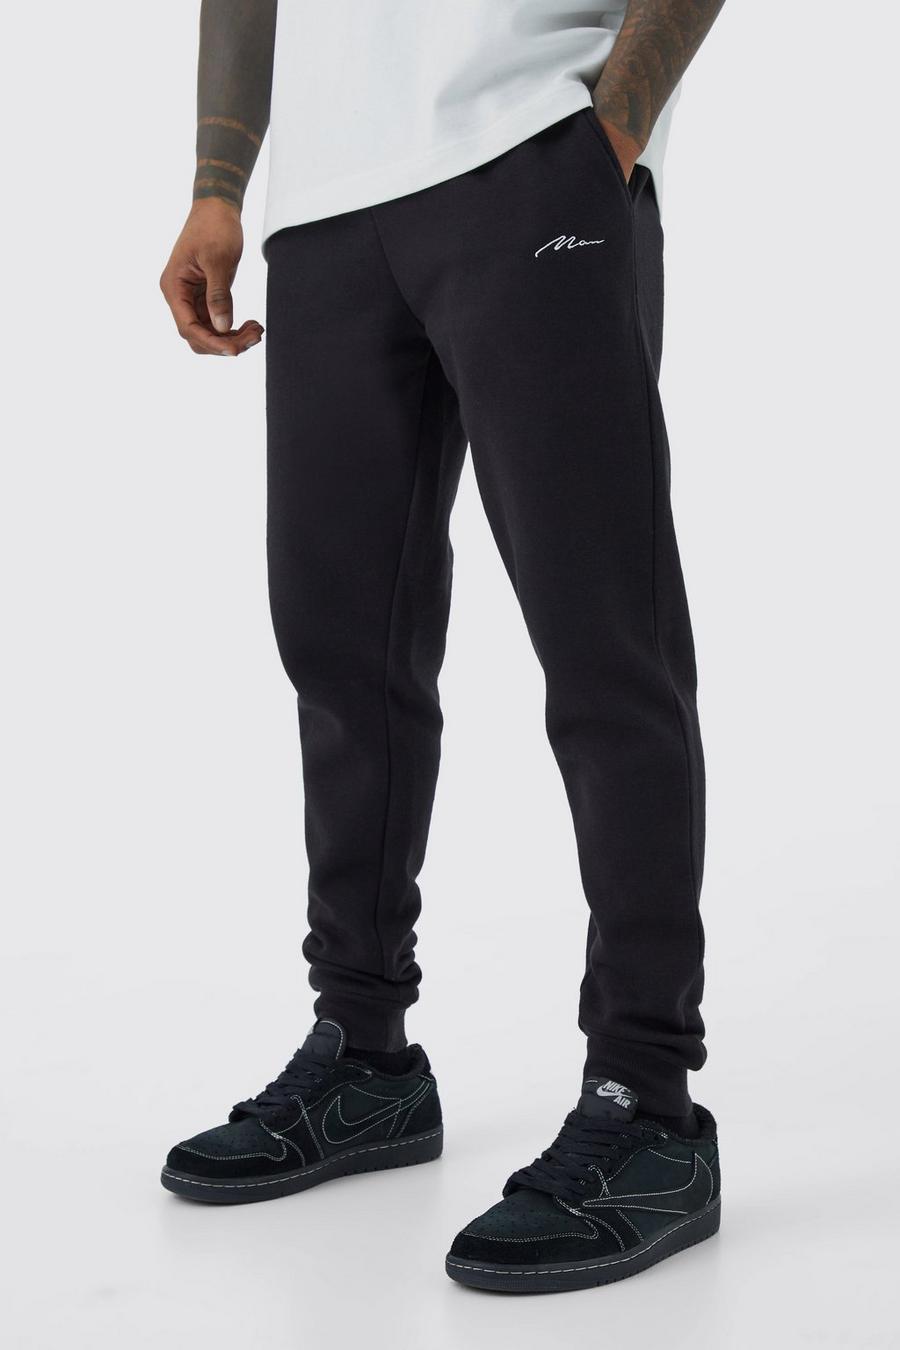 Pantalón deportivo pitillo con firma MAN, Black nero